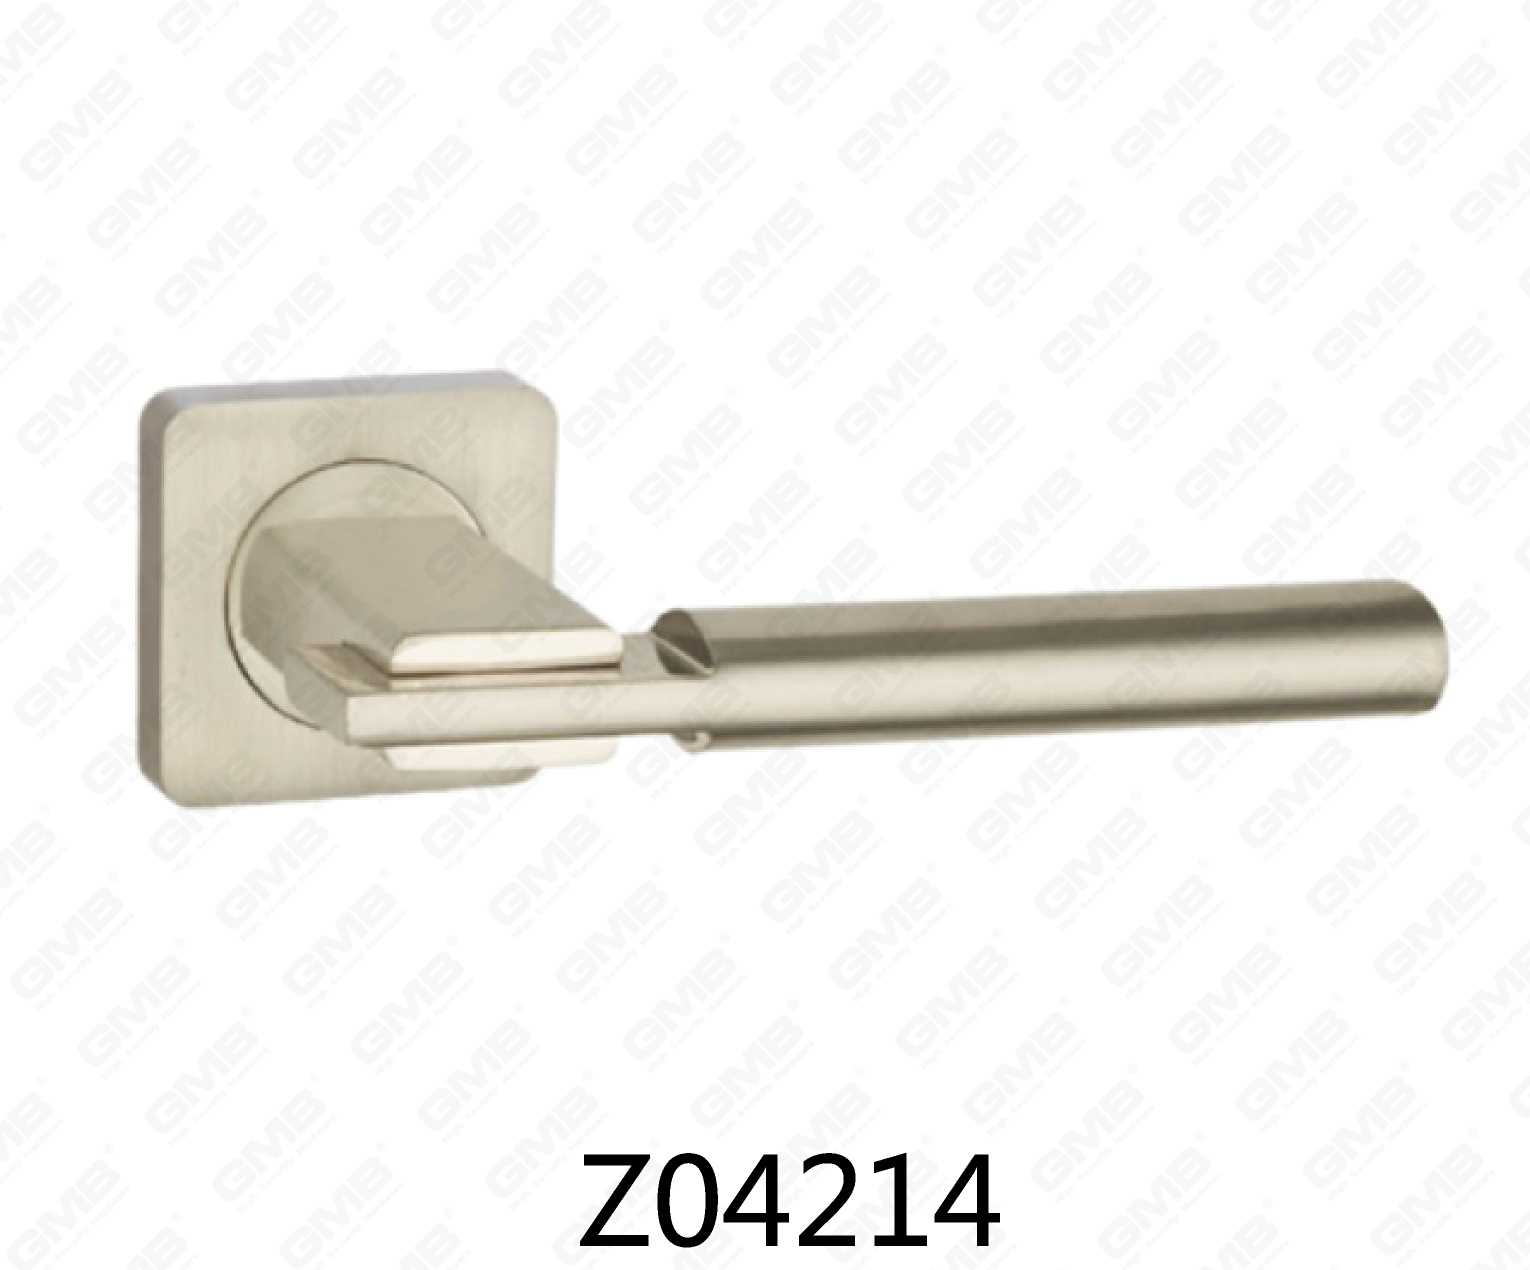 ידית דלת רוזטת אלומיניום מסגסוגת אבץ של Zamak עם רוזטה עגולה (Z04214)